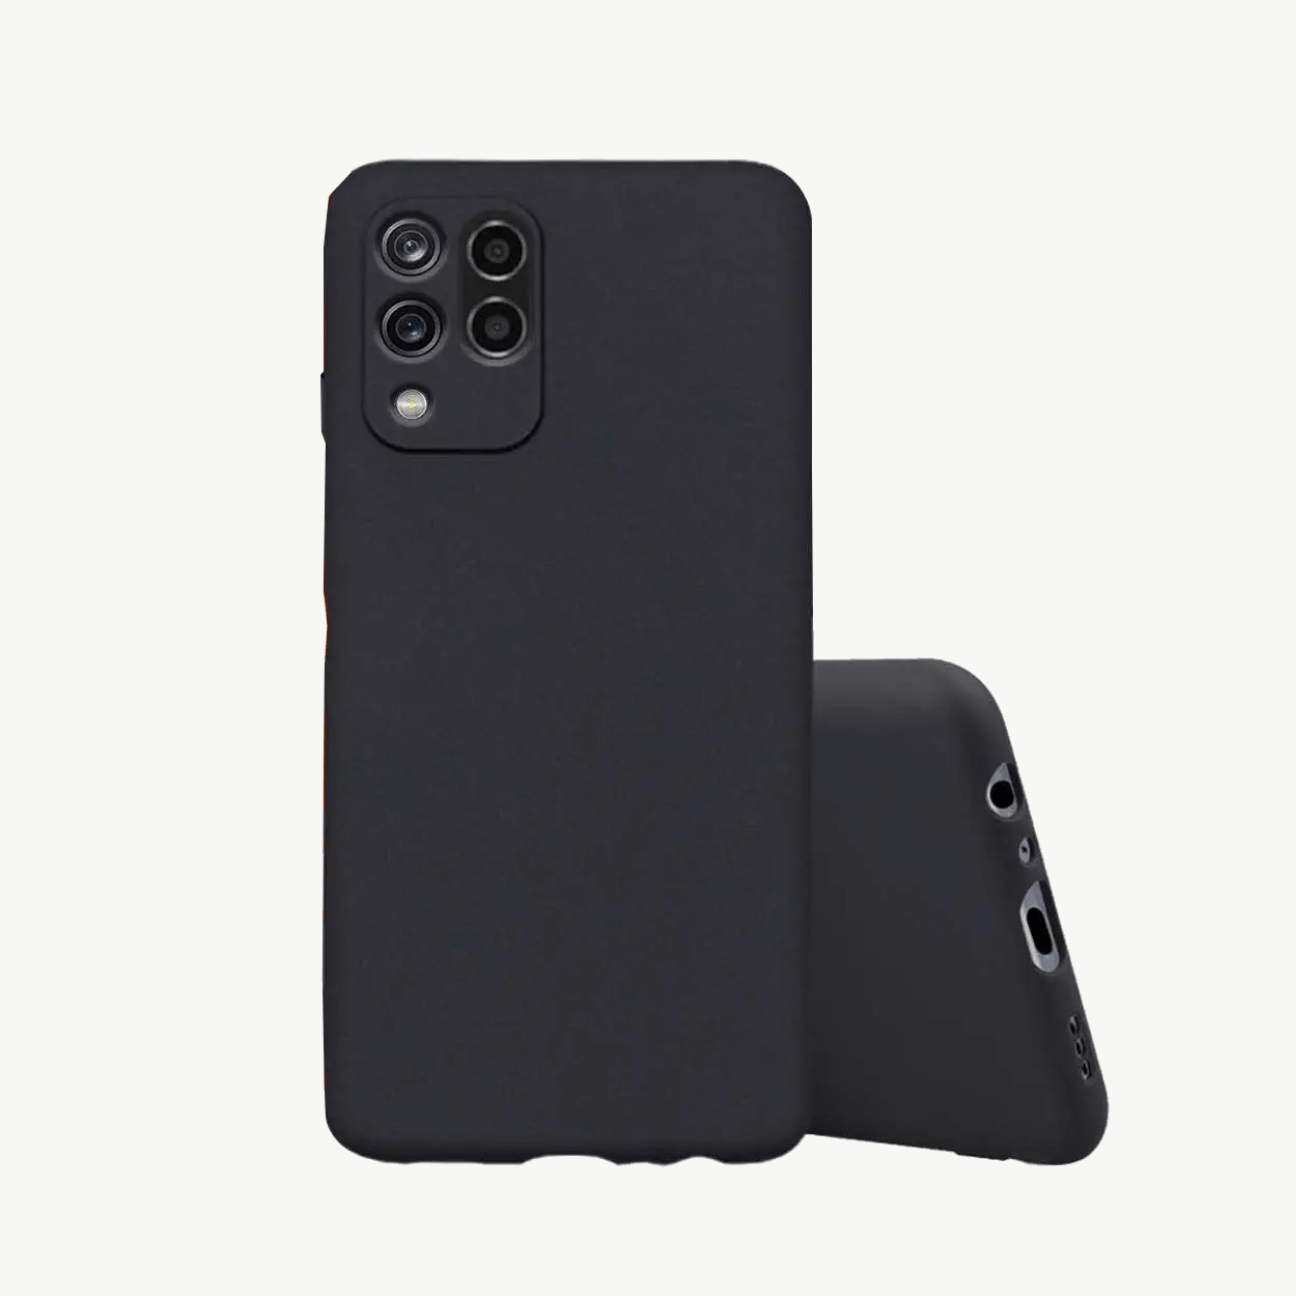 Xiaomi Redmi 5A Black Soft Silicone Phone Case